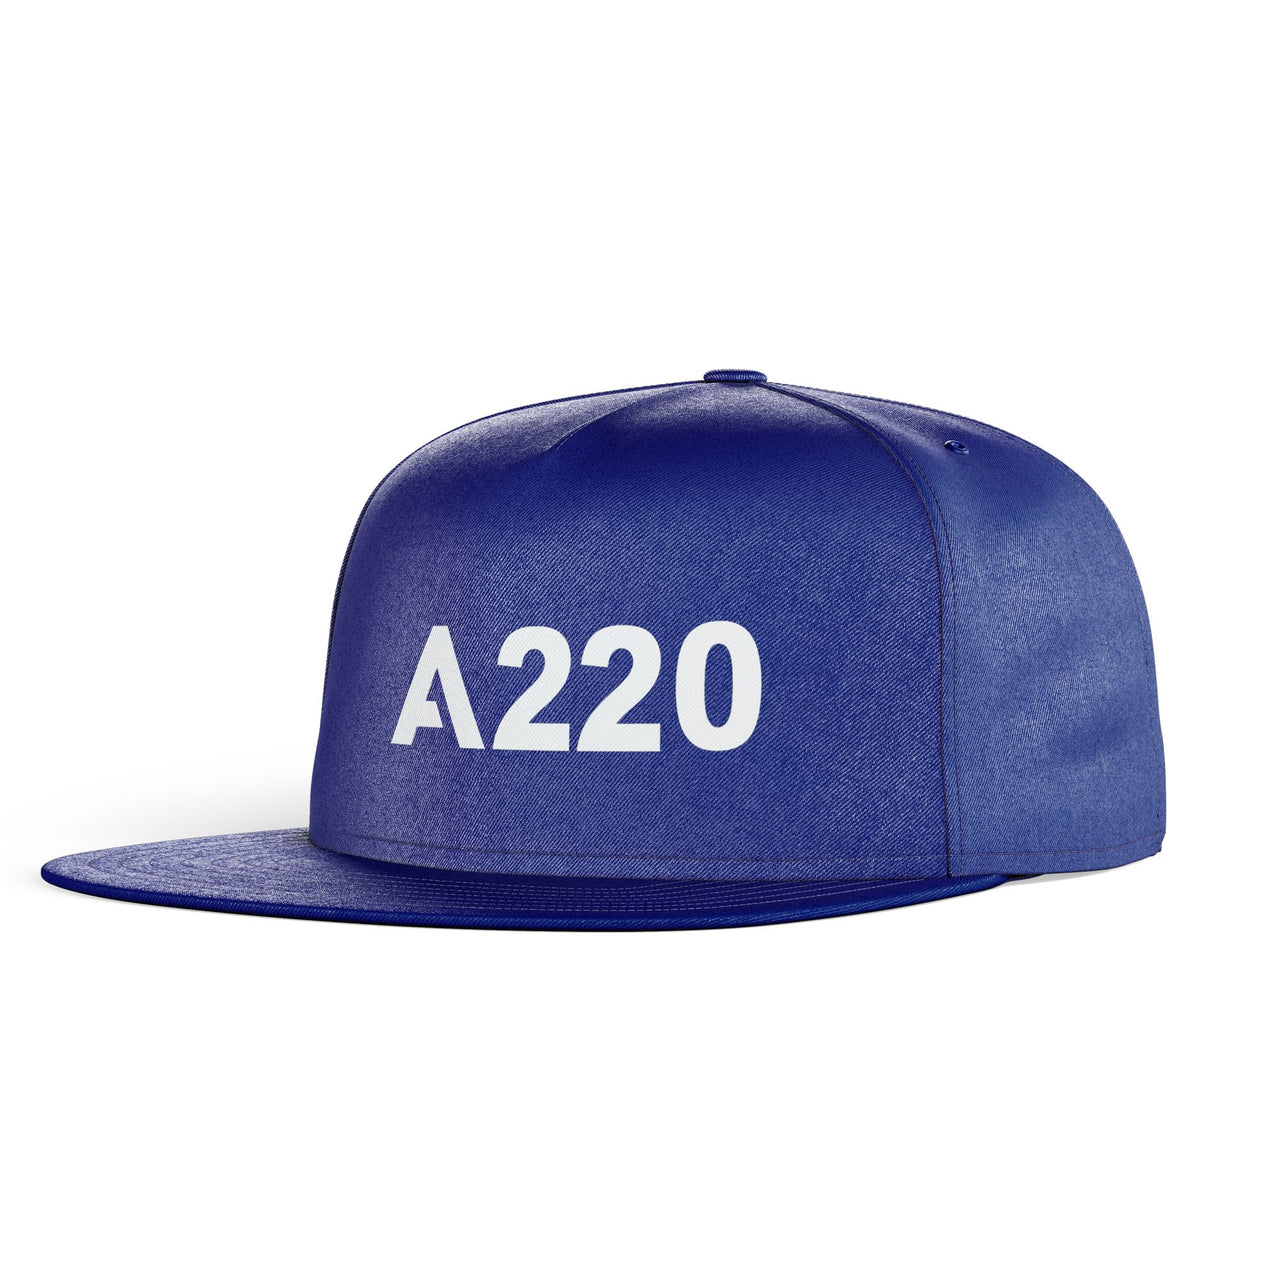 A220 Flat Text Designed Snapback Caps & Hats